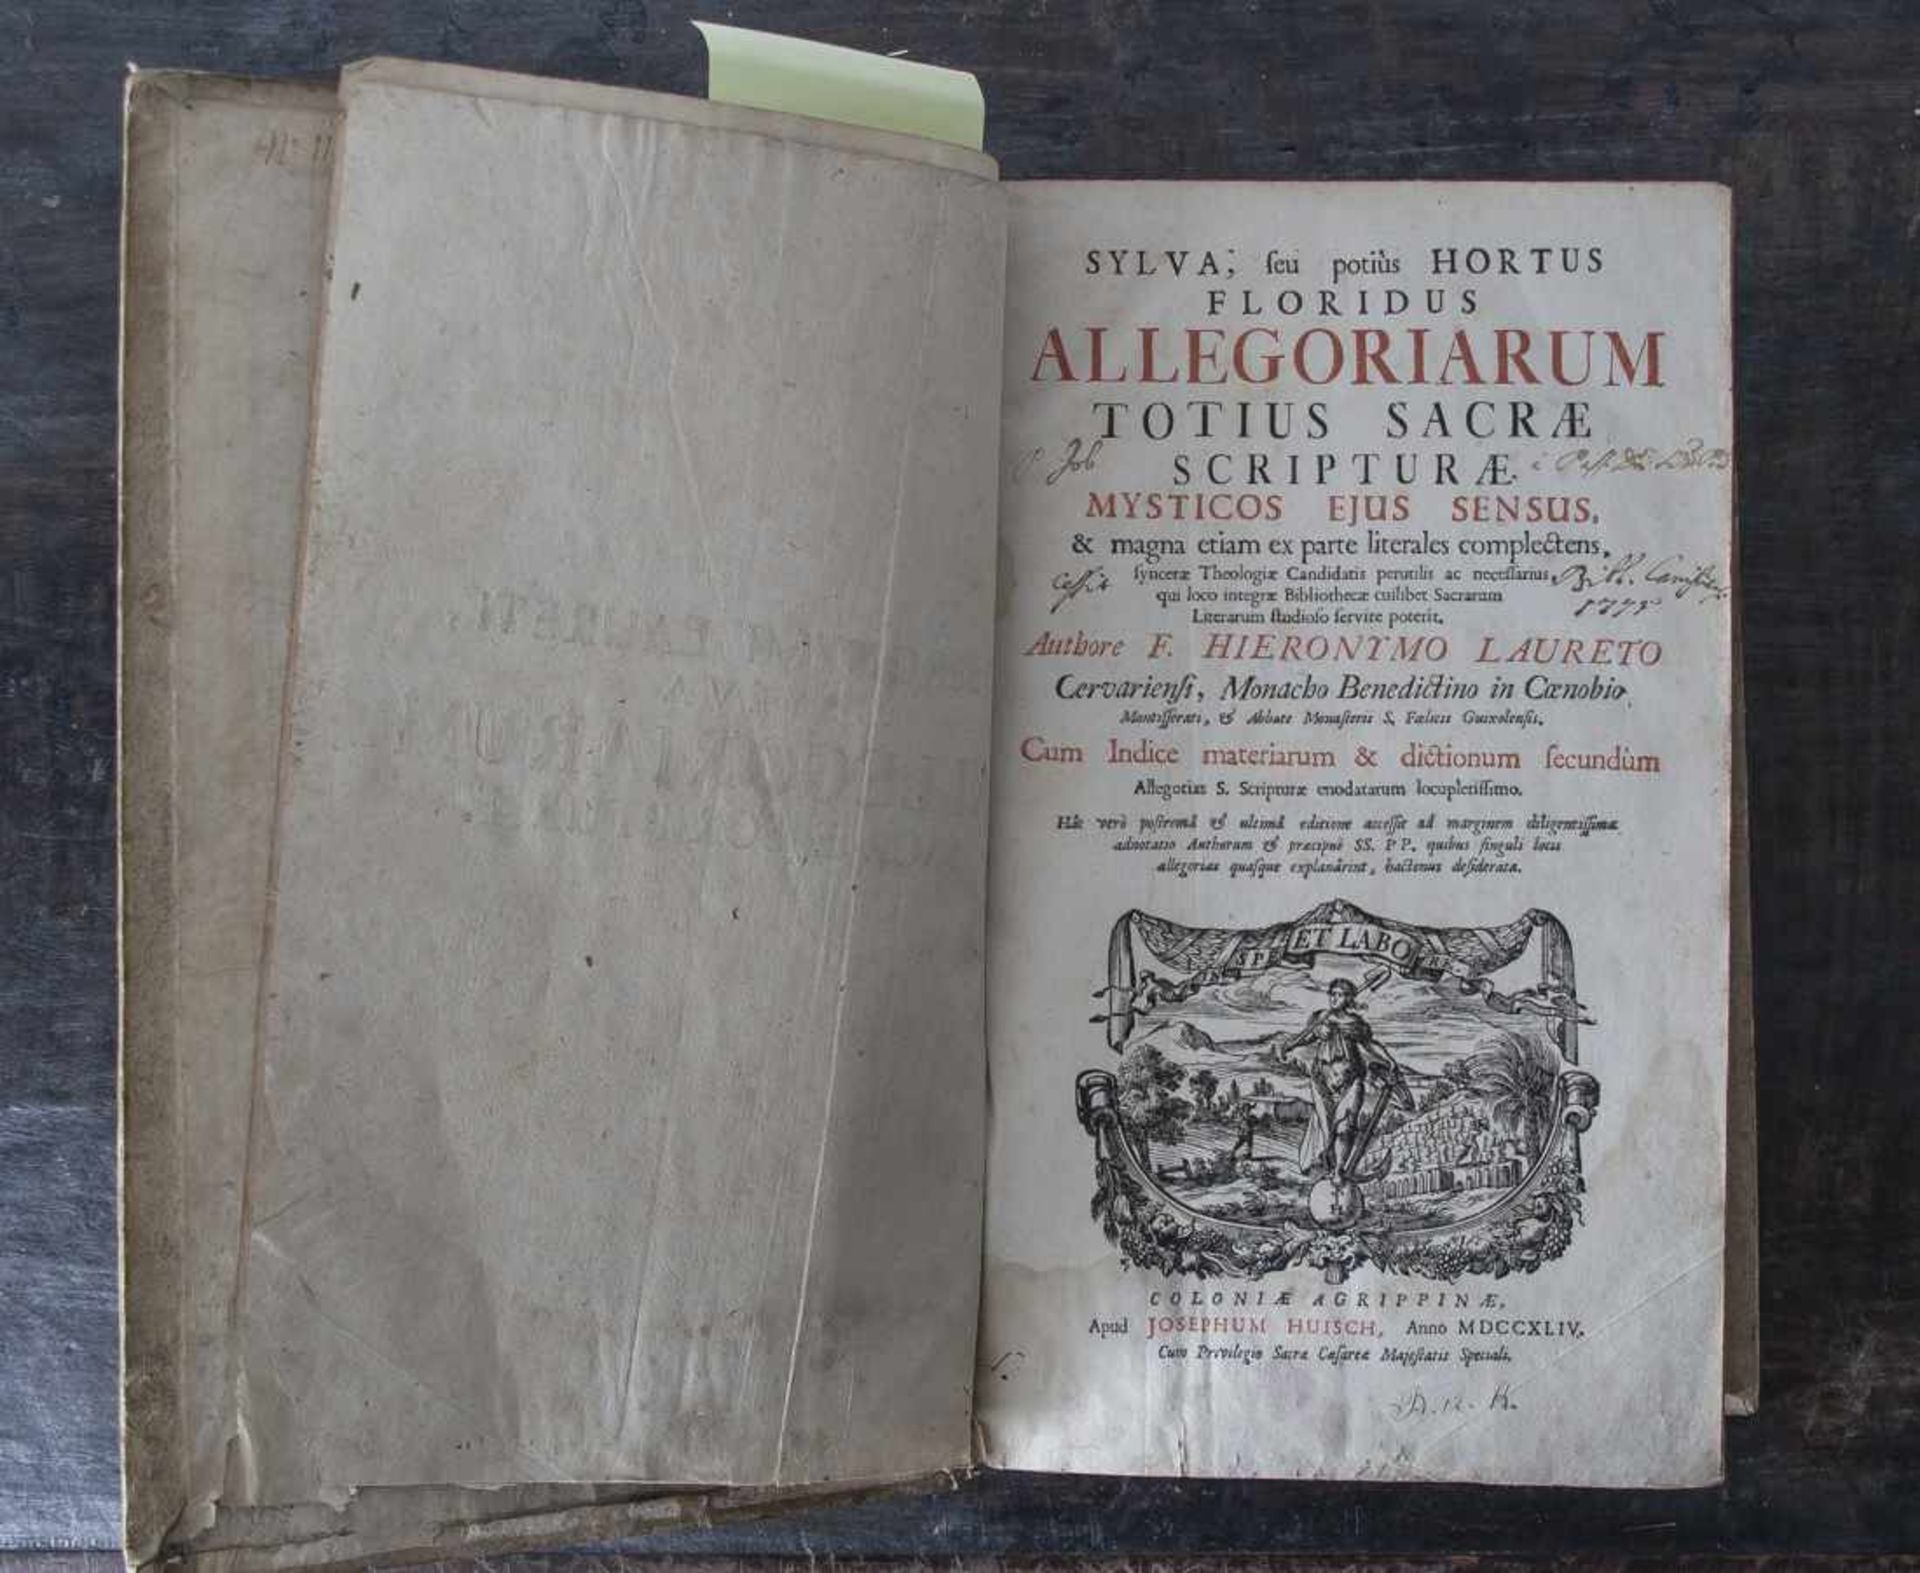 Lauretus, Hieronymus, Sylva, seu potius hortus floridus allegoriarum totius sacrae scripturae - Image 2 of 2